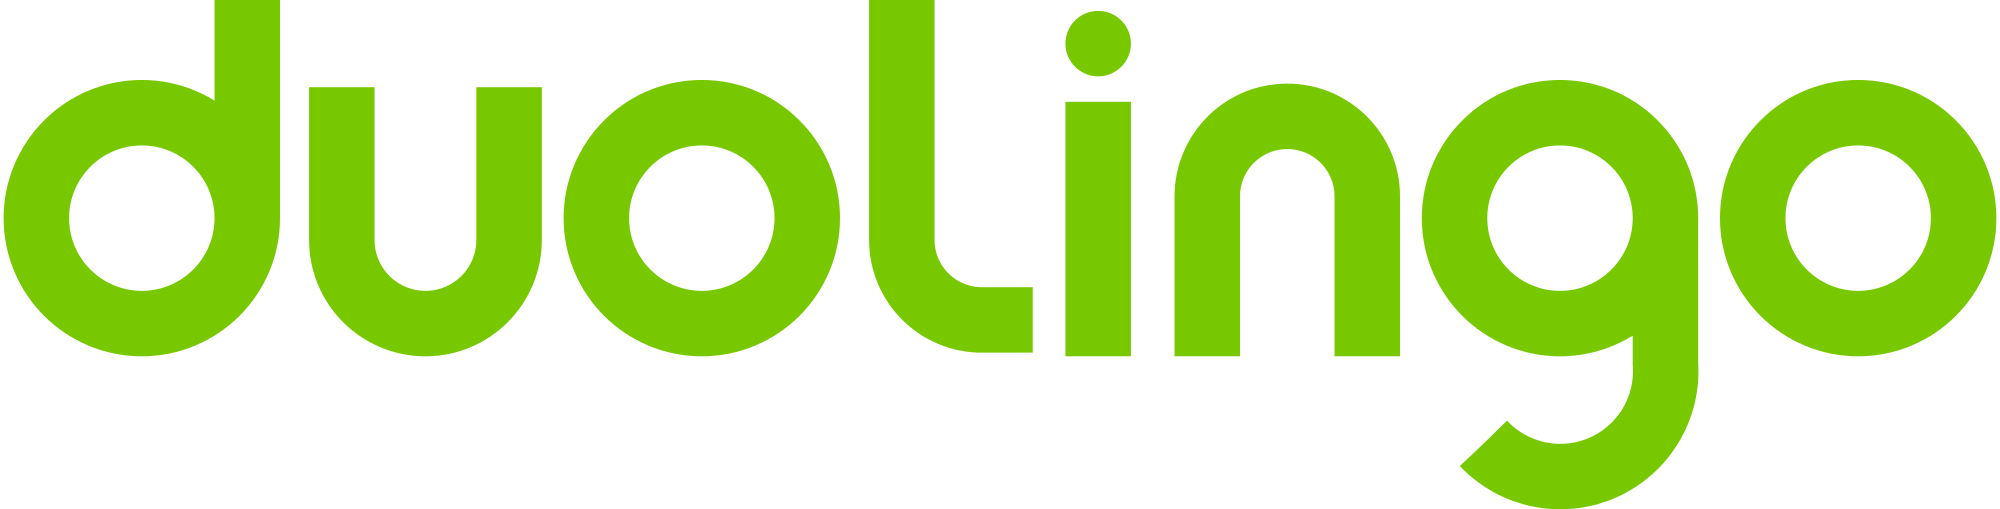 Duolingo logo png PNG Image